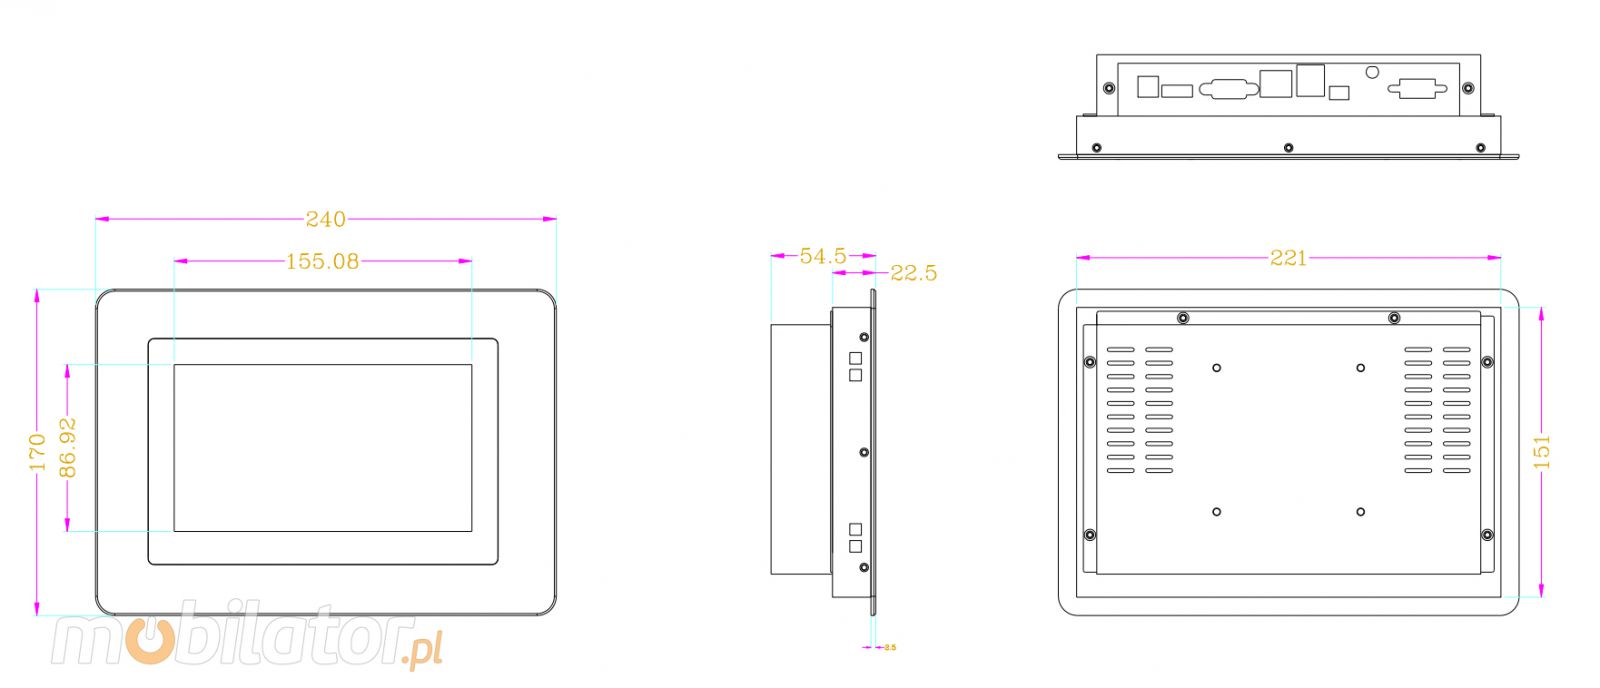 MobiTouch 7RK4 - wzmocniony bezwentylatorowy Panel komputerowy 7-mio calowy z systemem Android 7.1, norm IP65 na front obudowy, zcza: COM*1, HDMI*1, USB*2, 1*RJ45, DC12V, Audio*1, SD